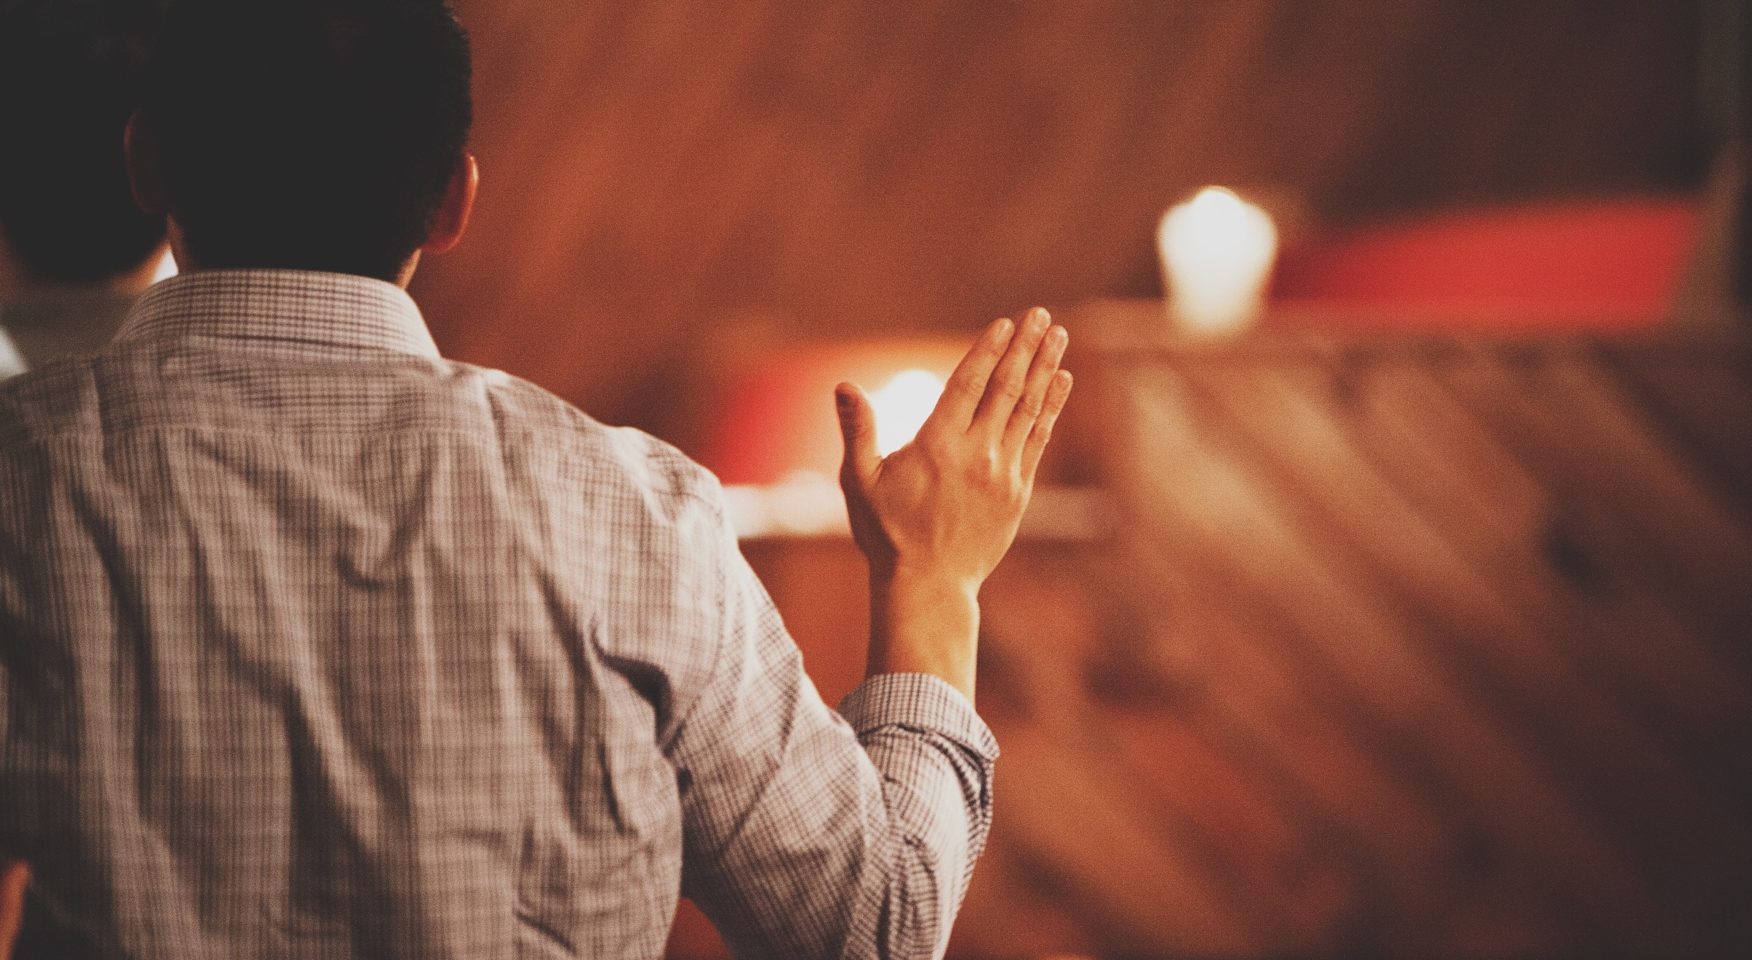 Man worshipping at wooden altar